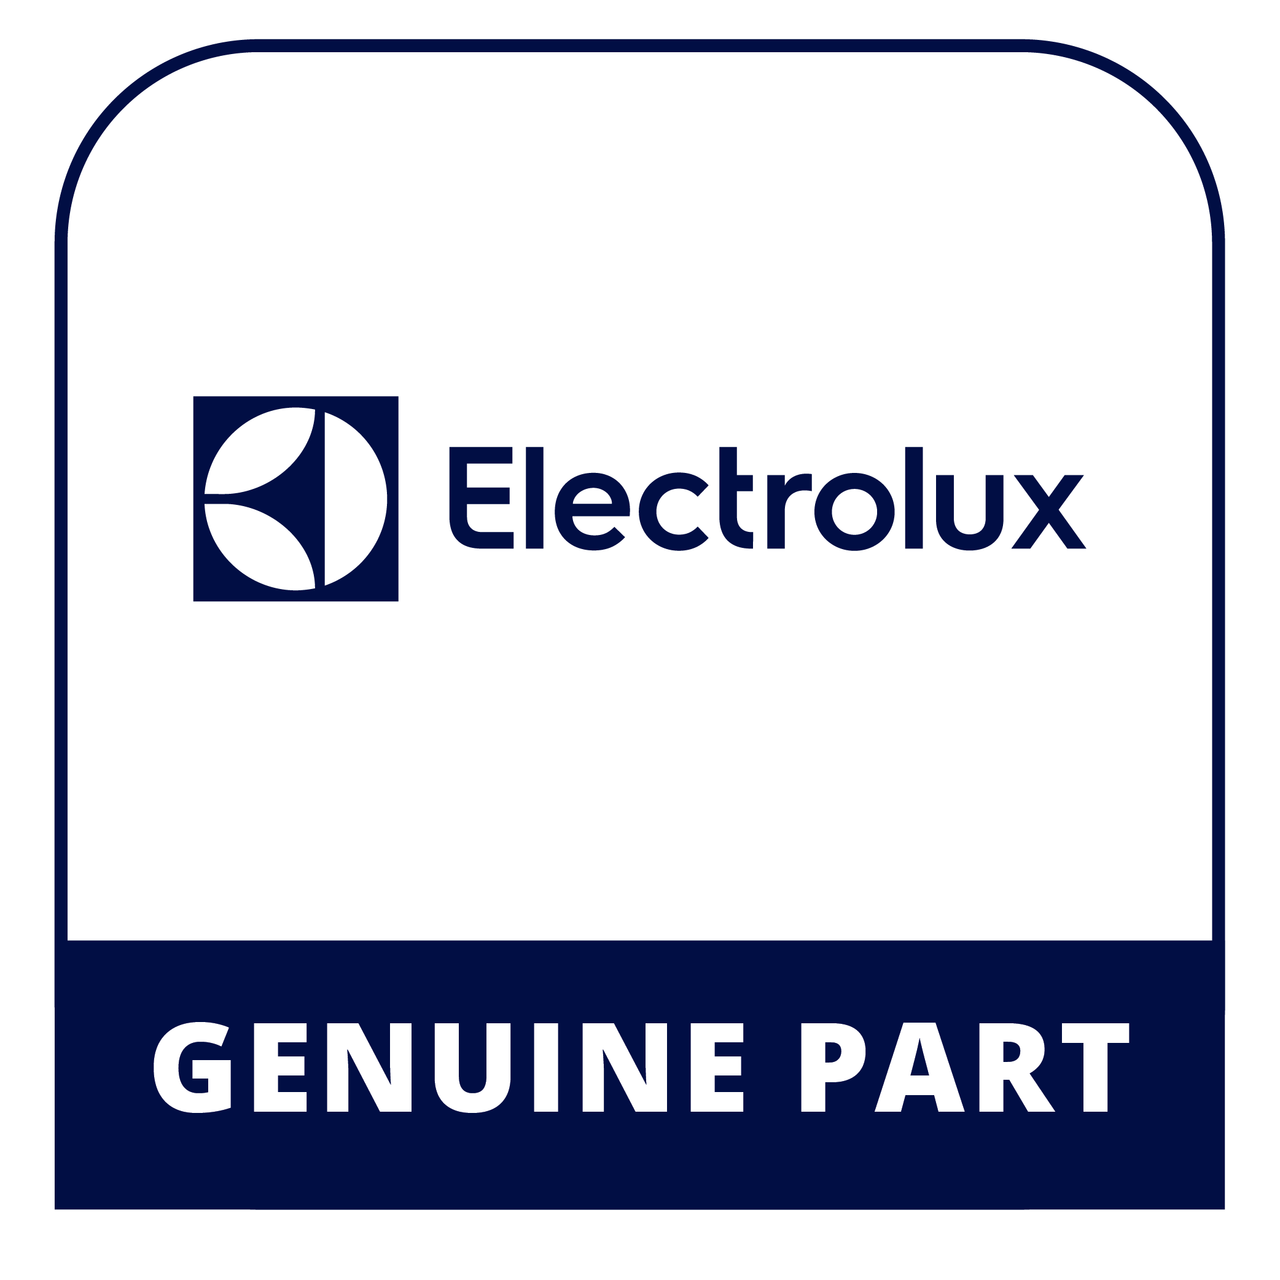 Frigidaire - Electrolux 5304463156 Door Stop - Genuine Electrolux Part